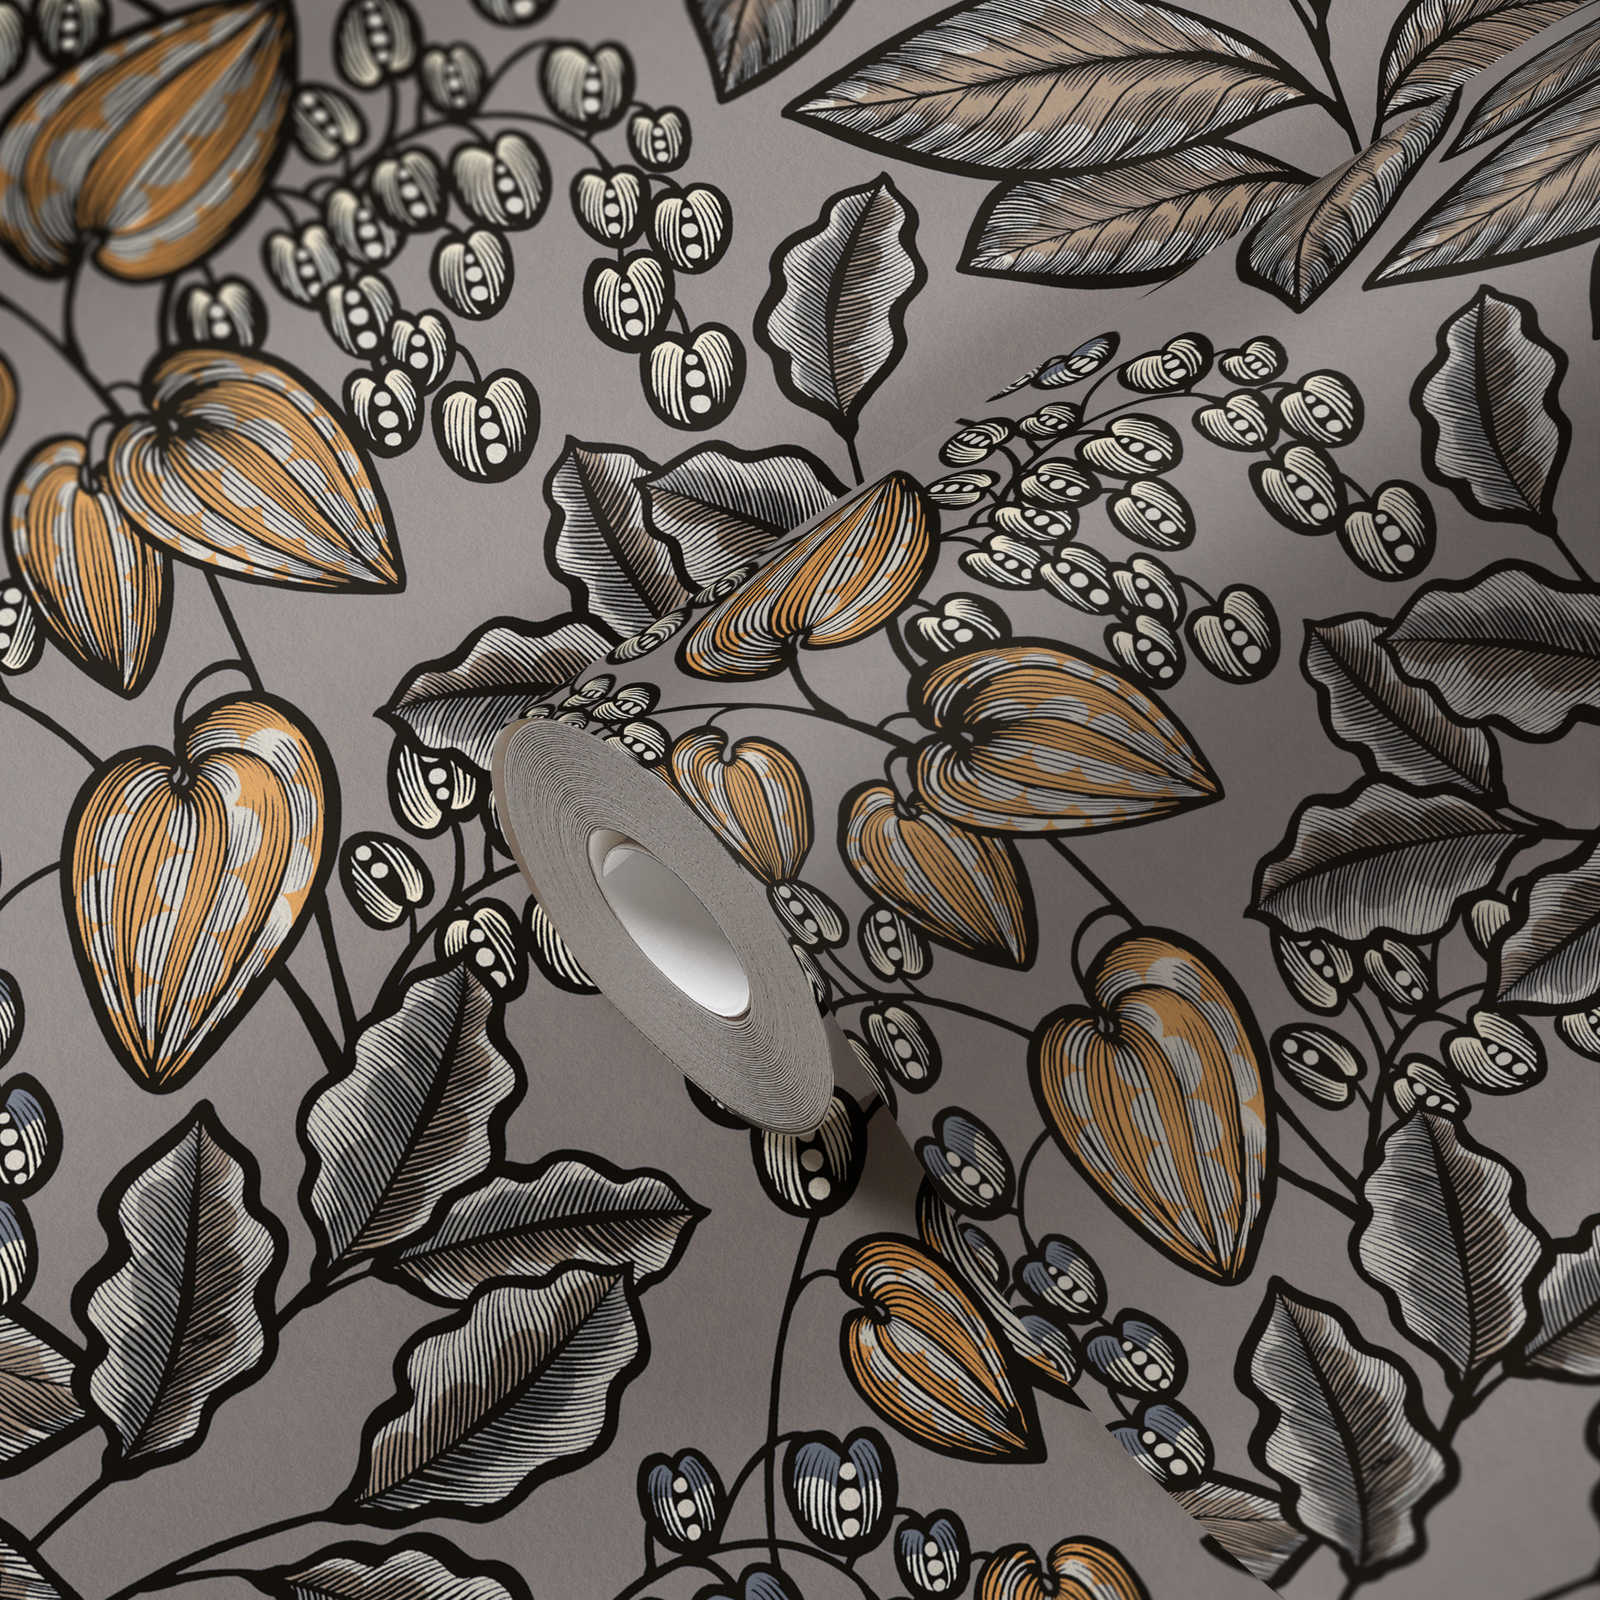             Tapete Greige Blätter Design mit Senfgelben Akzenten – Grau, Braun, Gelb
        